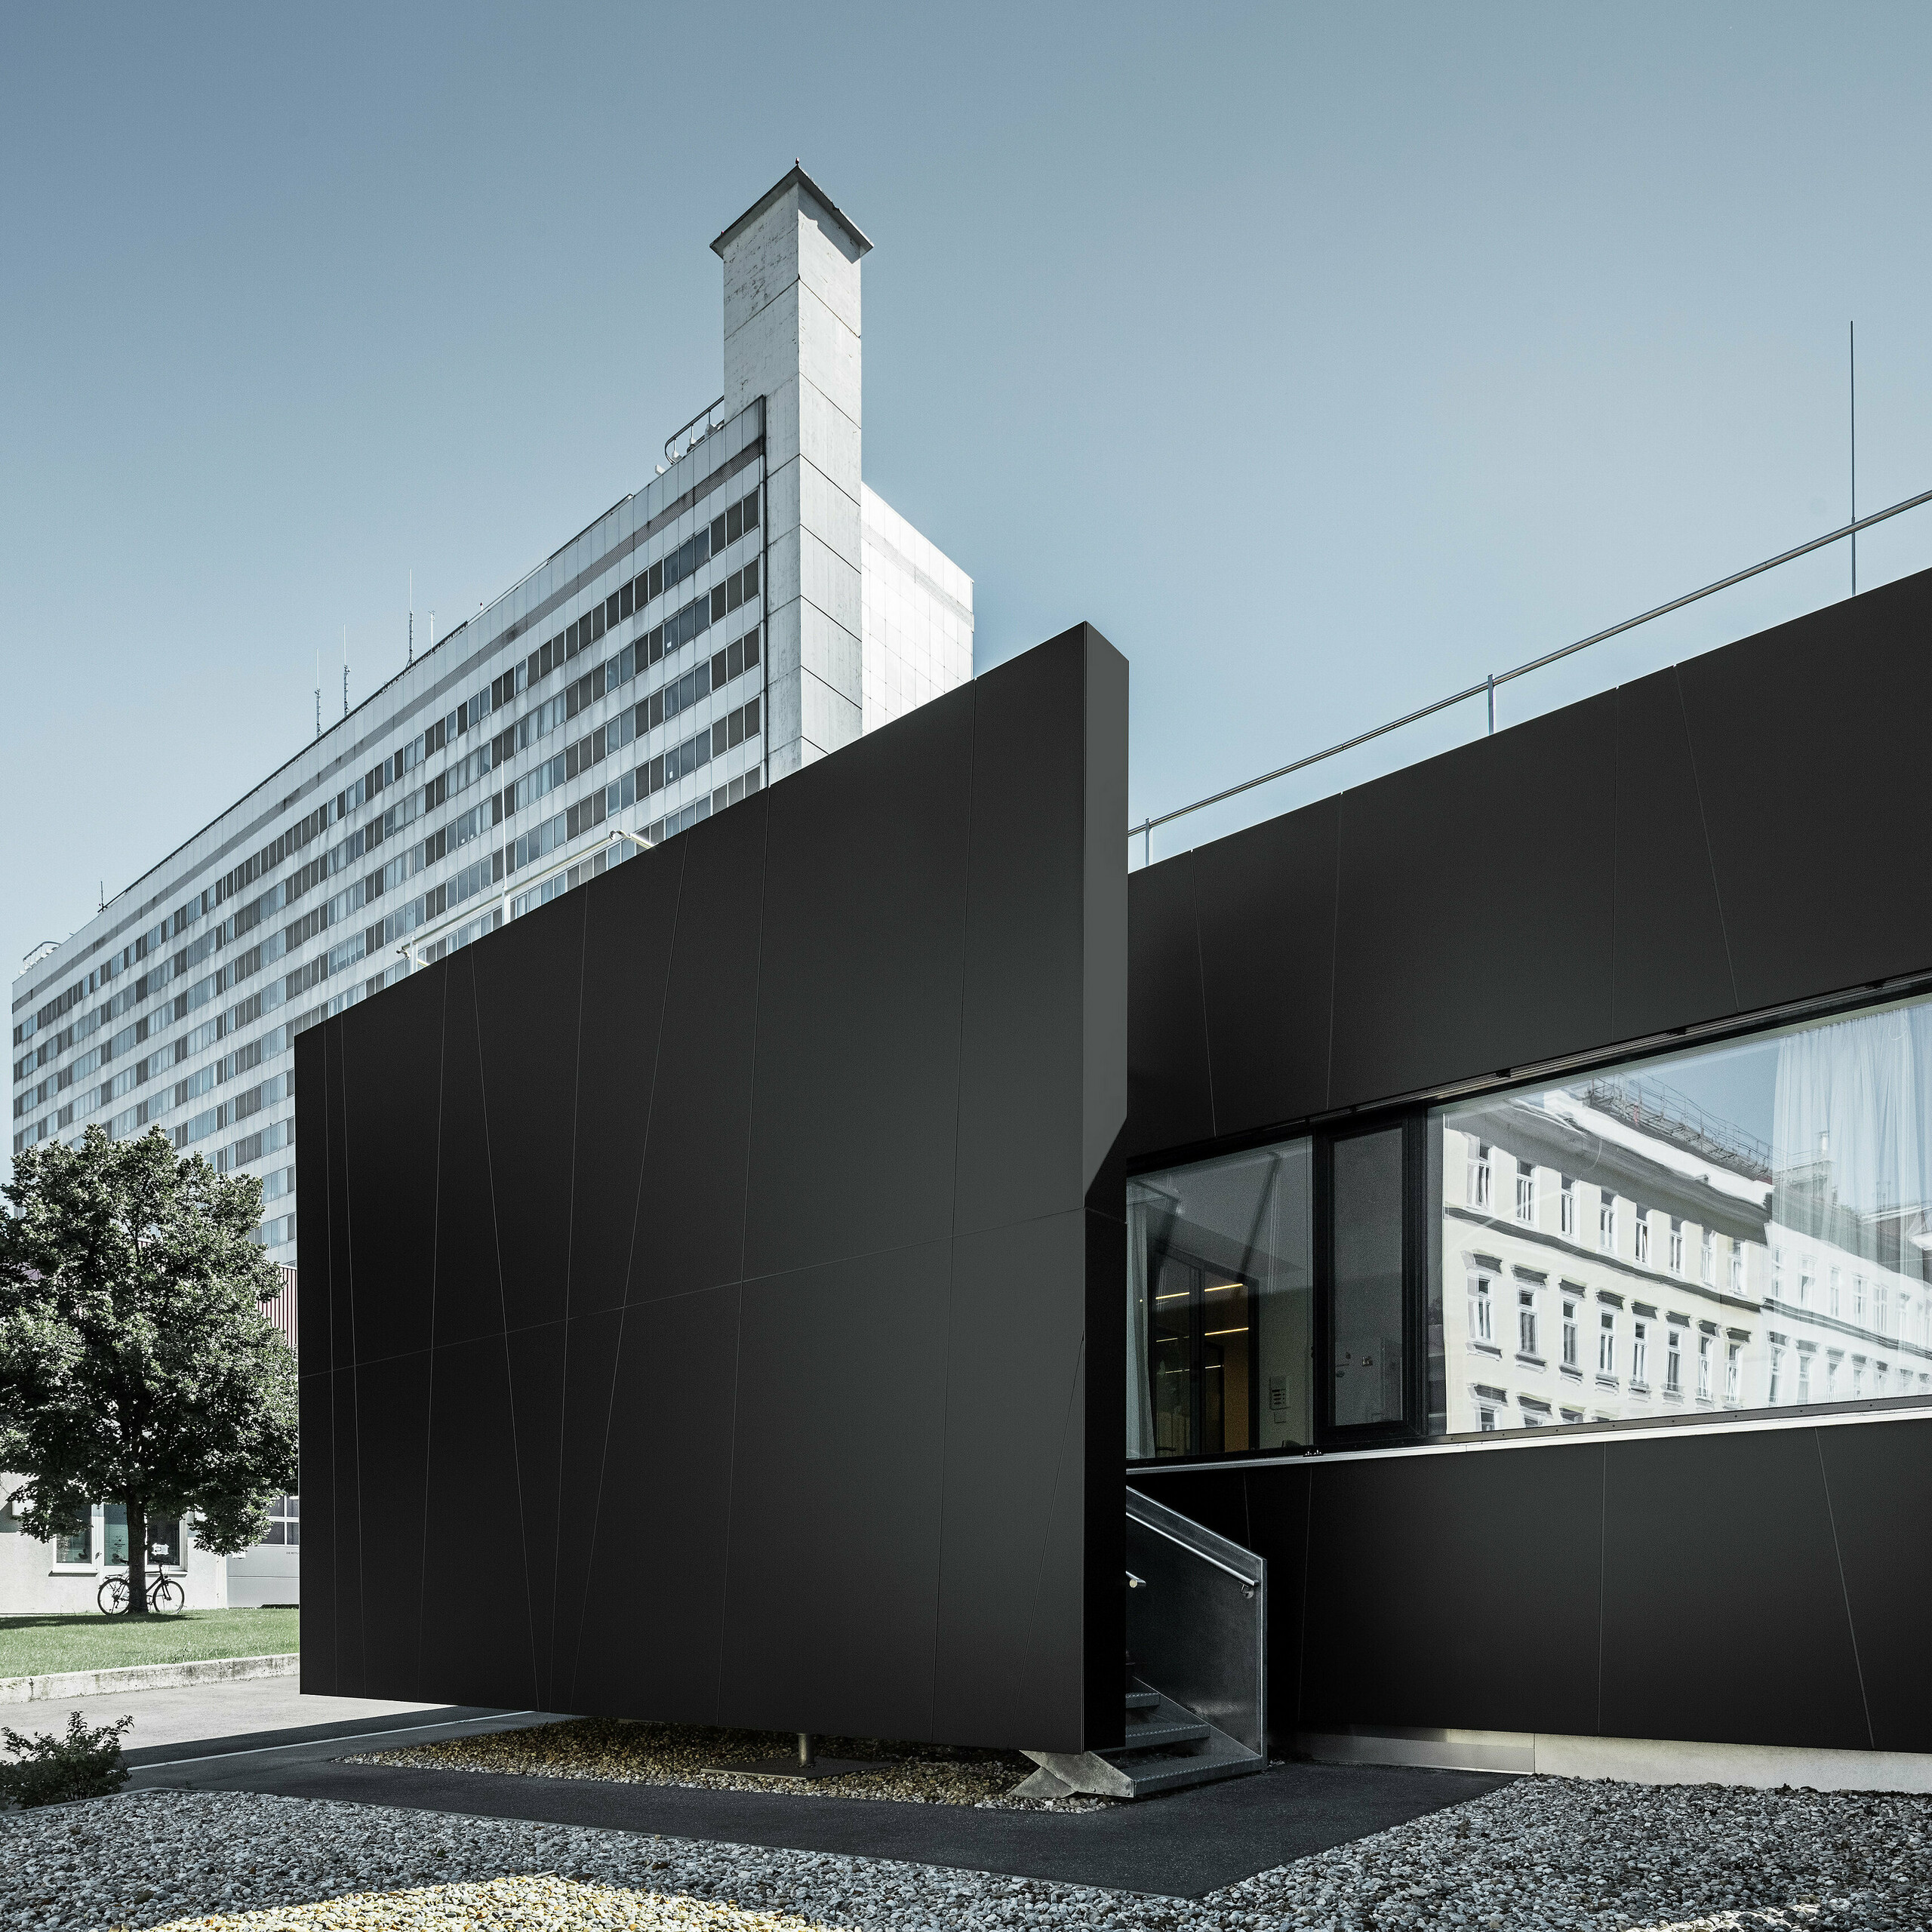 Frontalansicht der zentralen Notaufnahme der Klinik Landstraße in der Juchsgasse in Wien wurde mit PREFABOND Aluminium Verbundplatten in der Farbe schwarzgrau verkleidet.